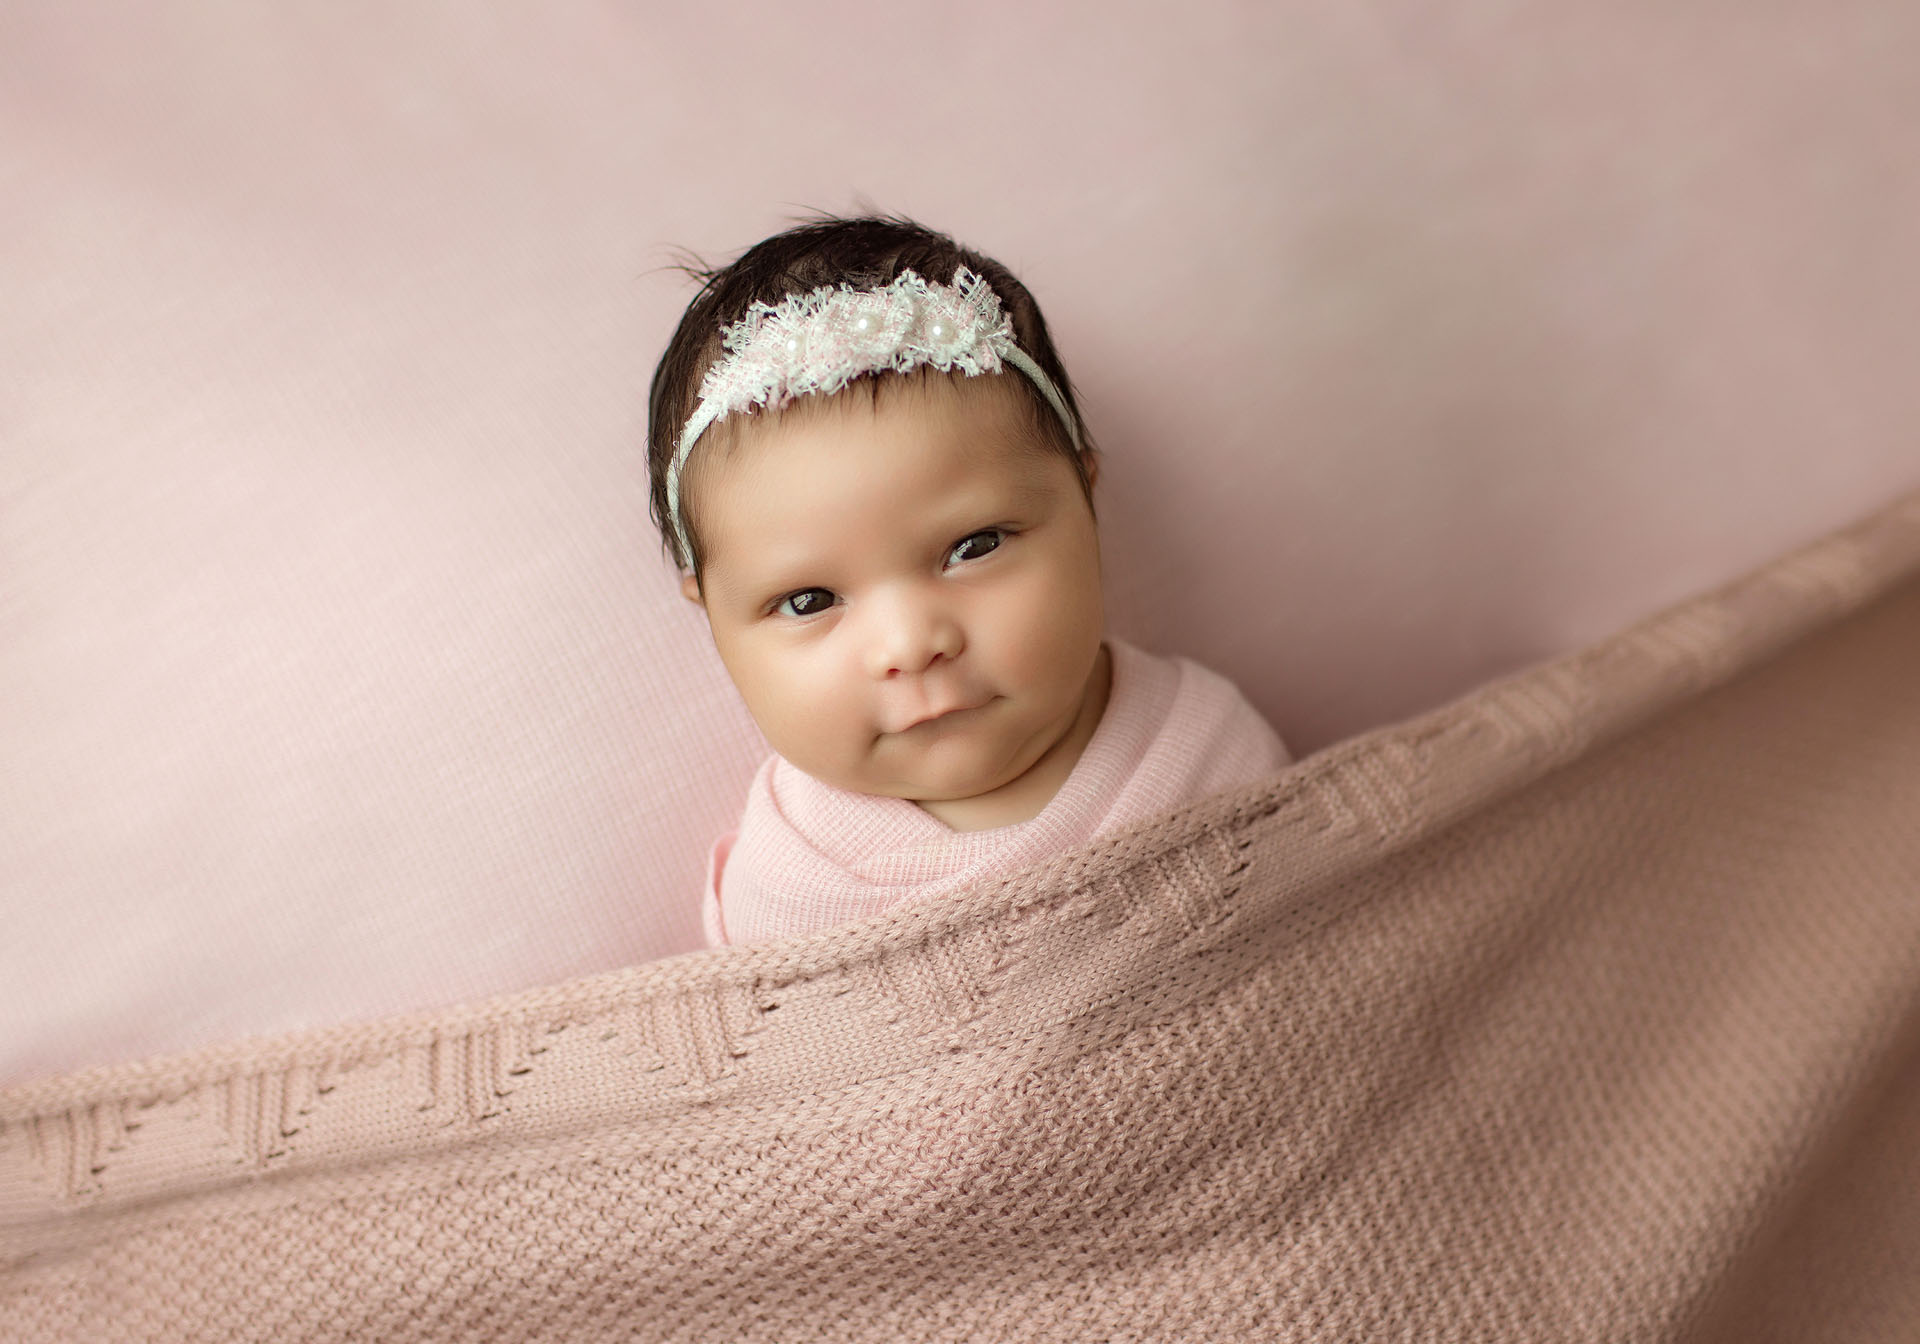 Newborn baby girl portrait on blush pink